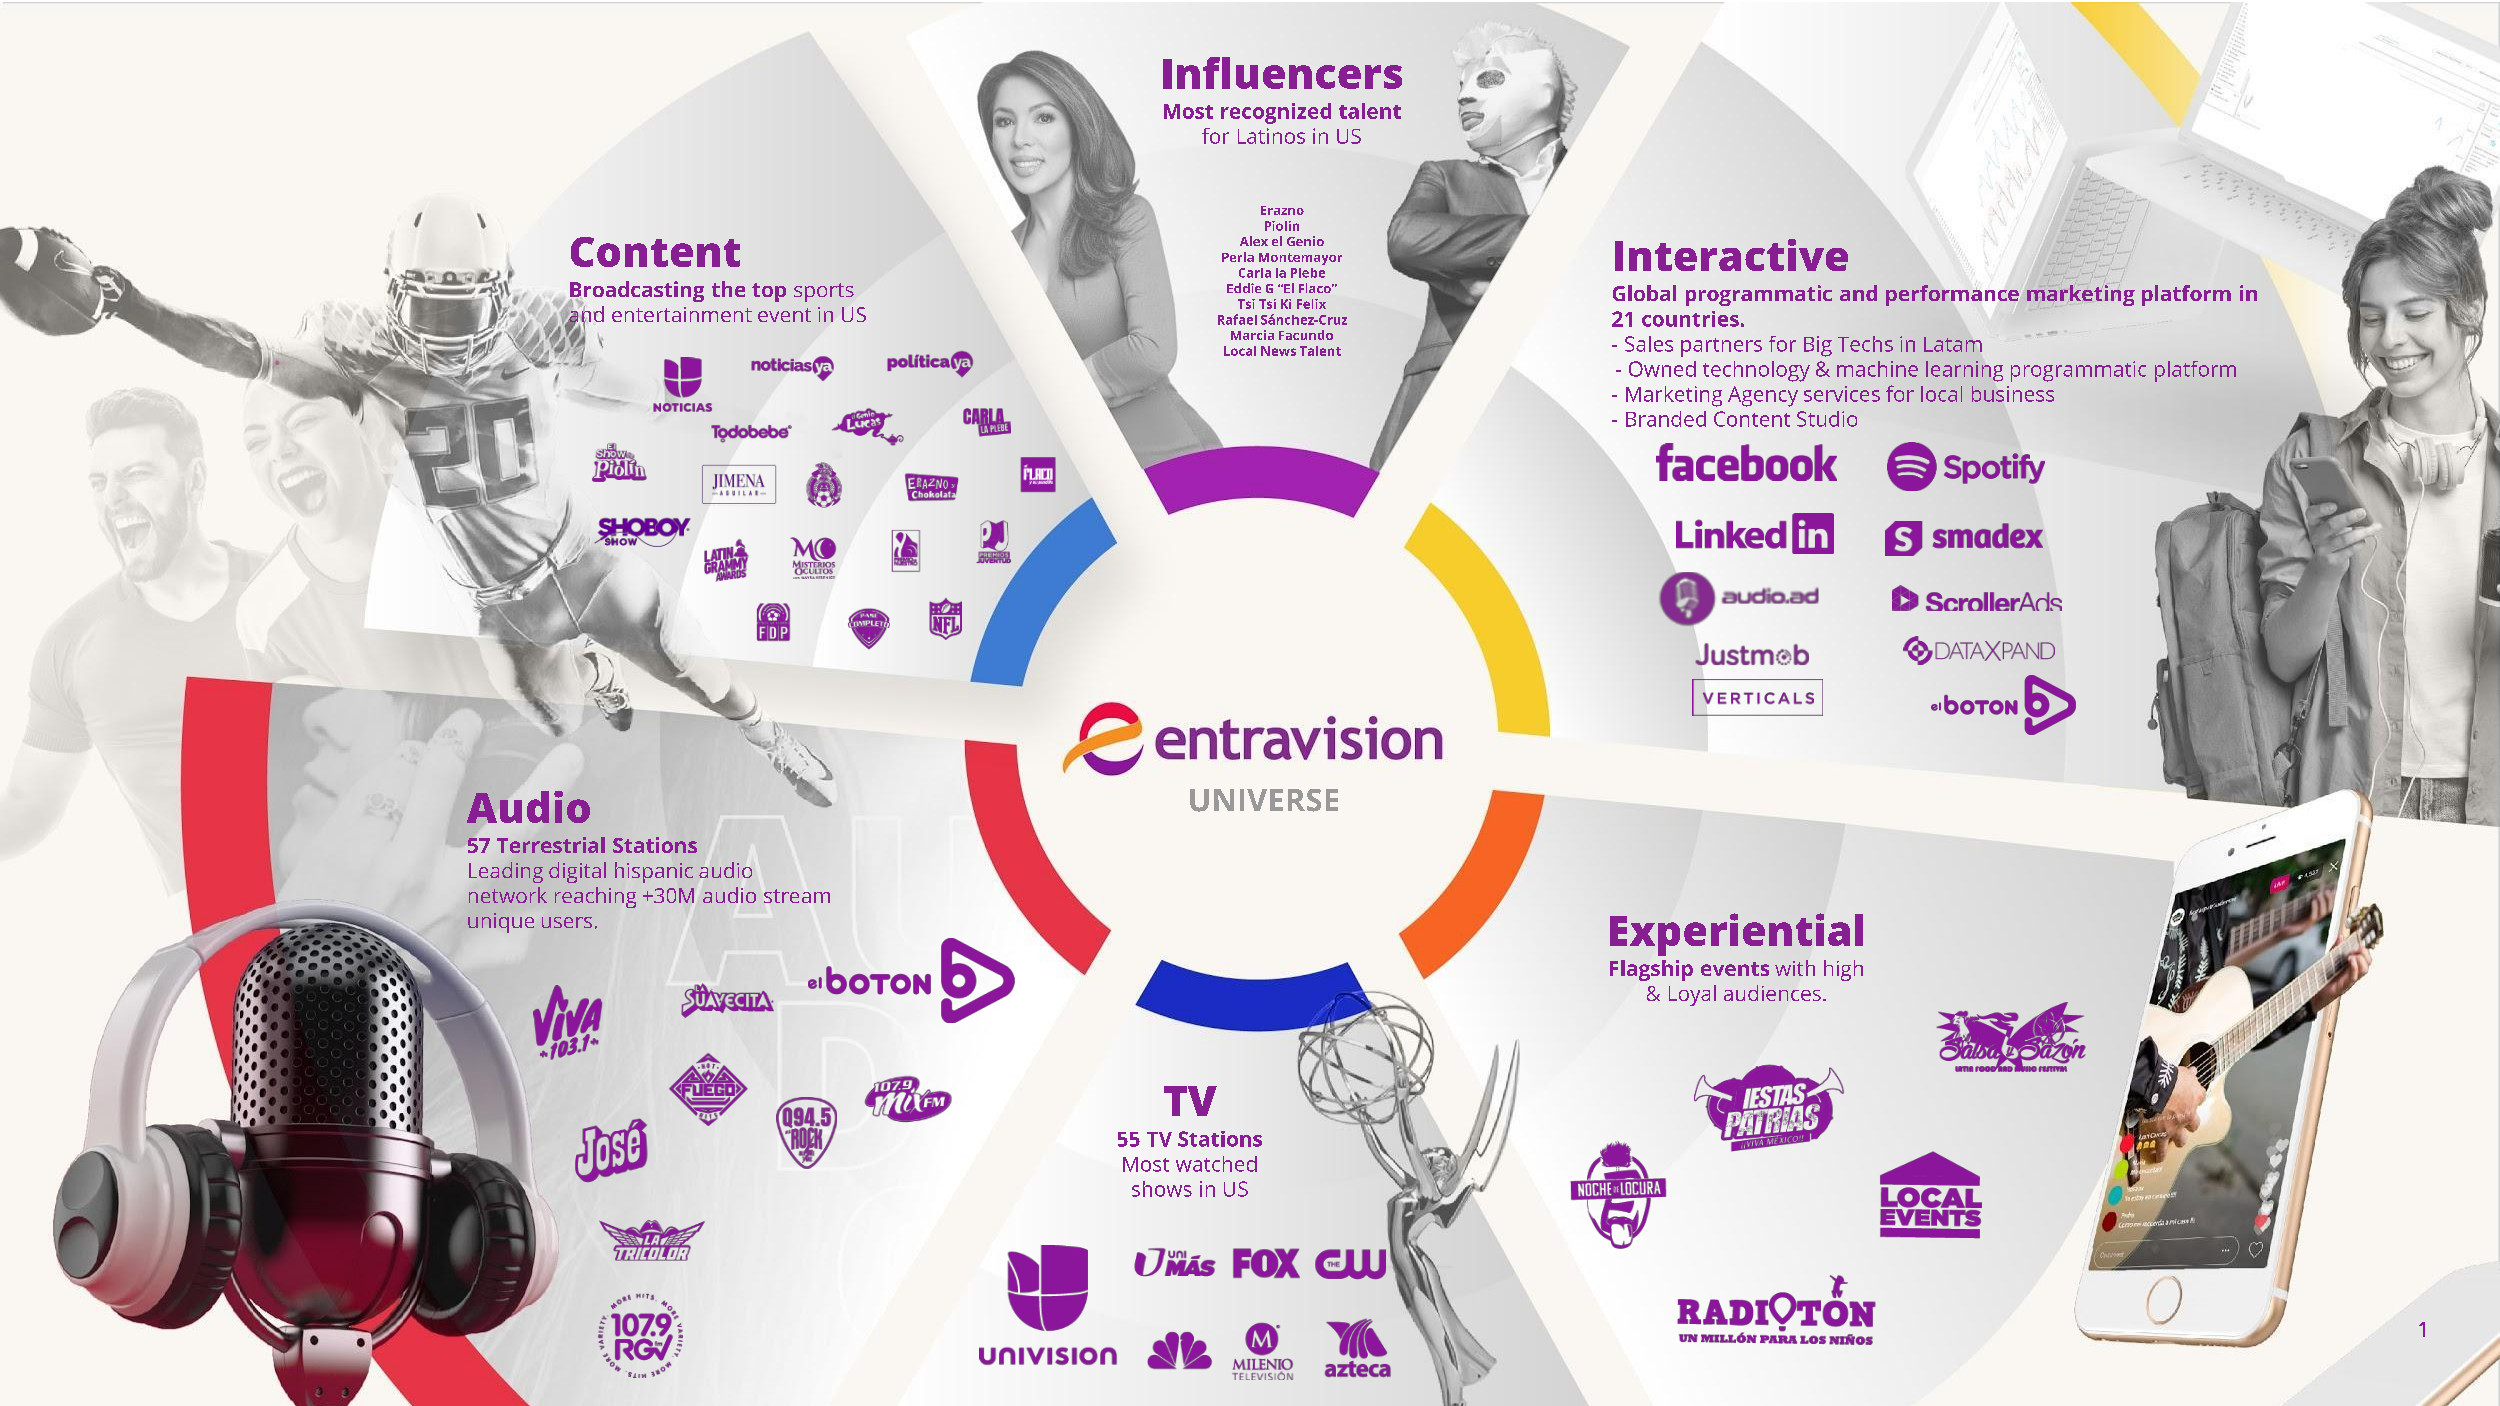 Entravision Universe